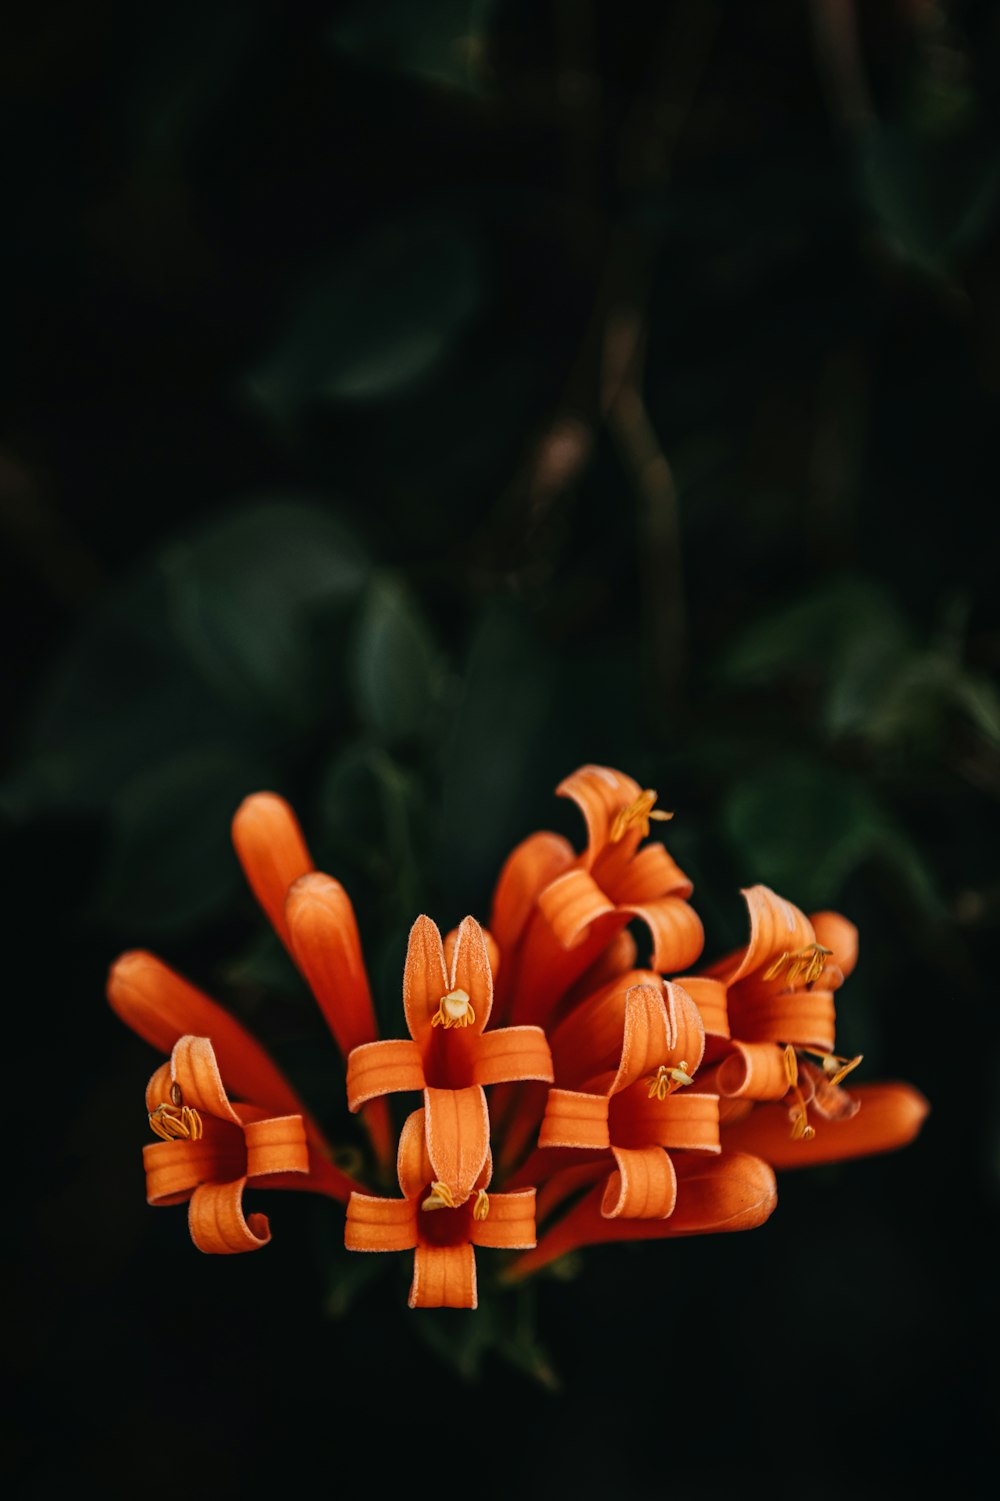 Orange Blume in Tilt Shift Linse